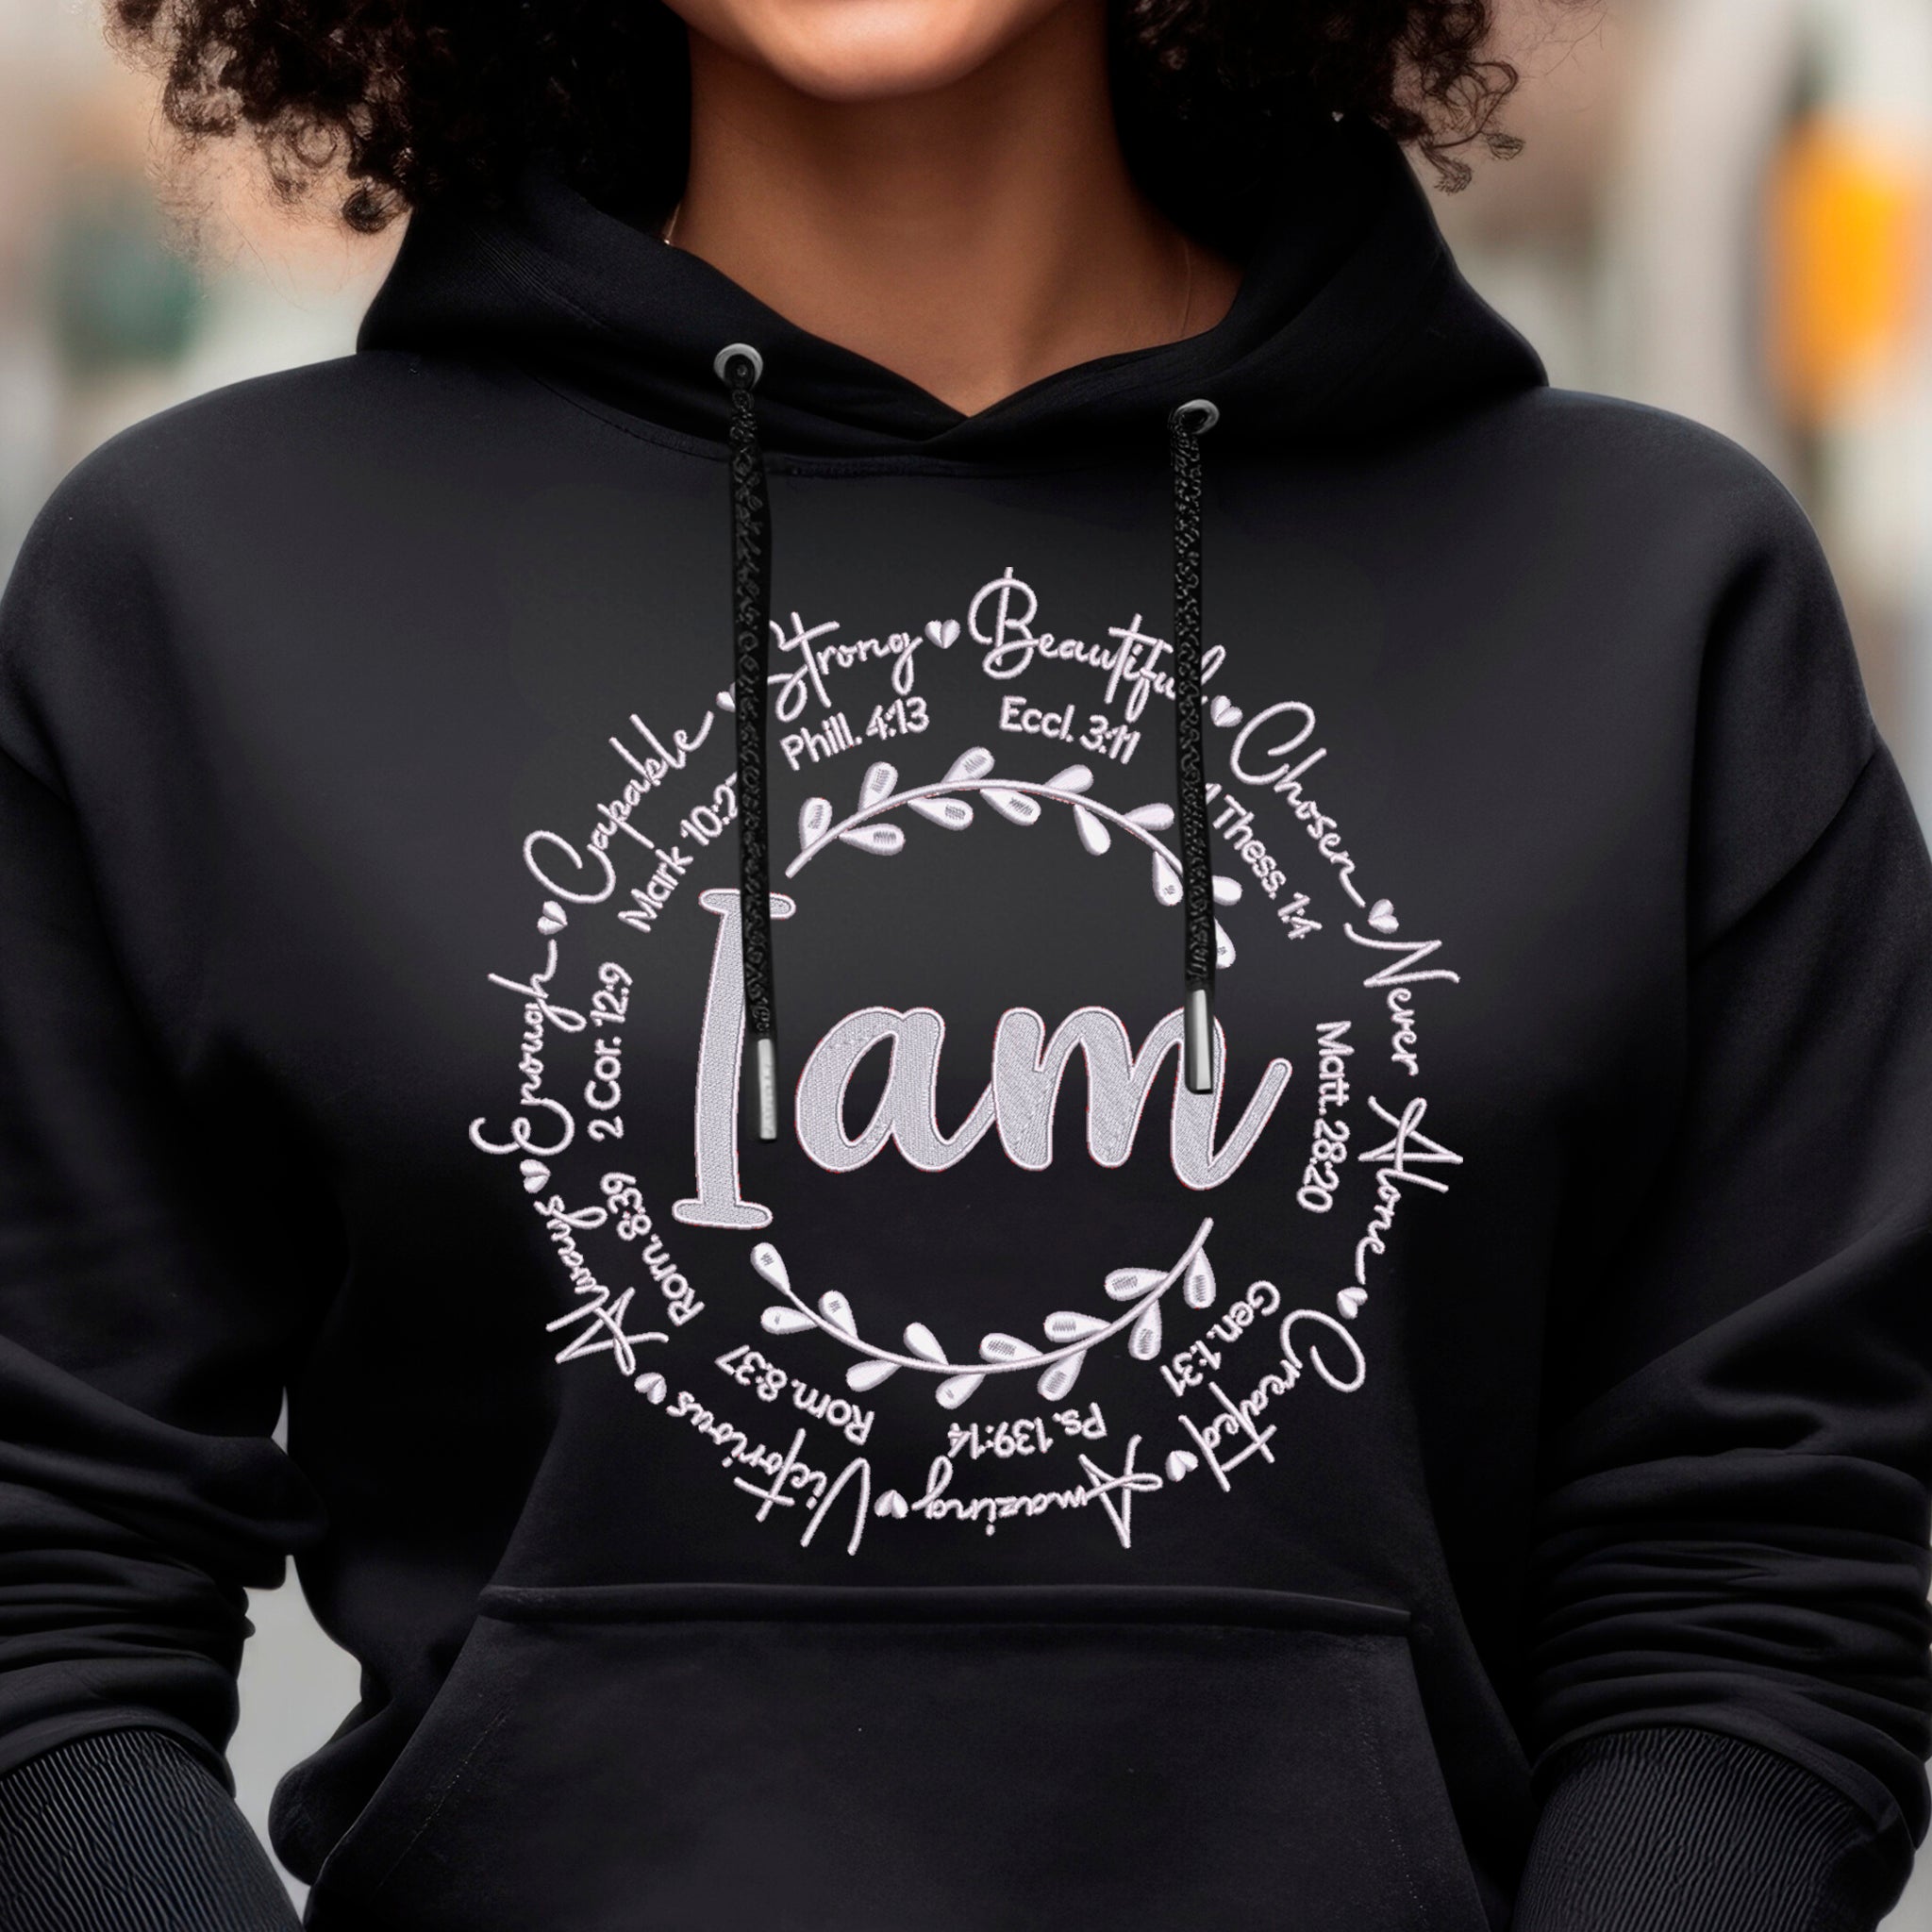 "I Am" Premium Embroidered Cotton Sweatshirt - Embedded Designz